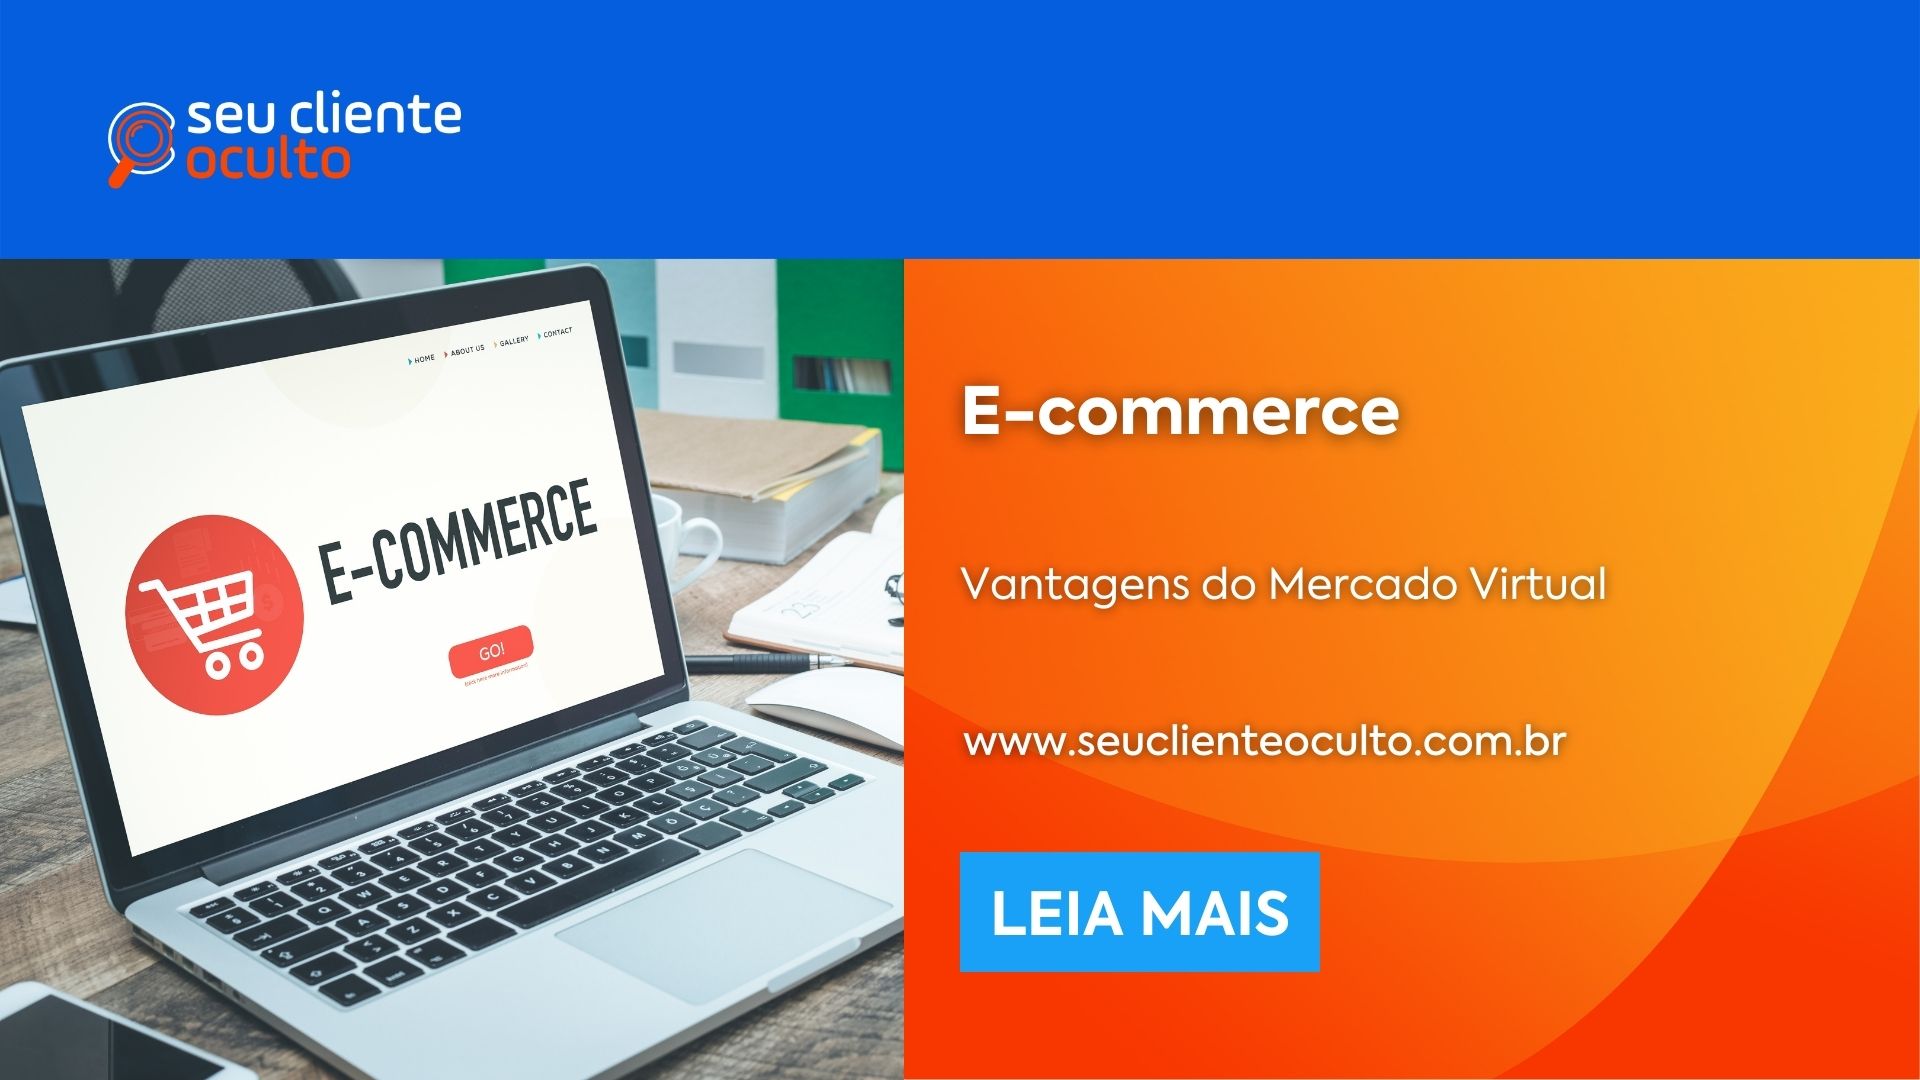 E-commerce Brasil: O Que é e Vantagens? - Seu Cliente Oculto